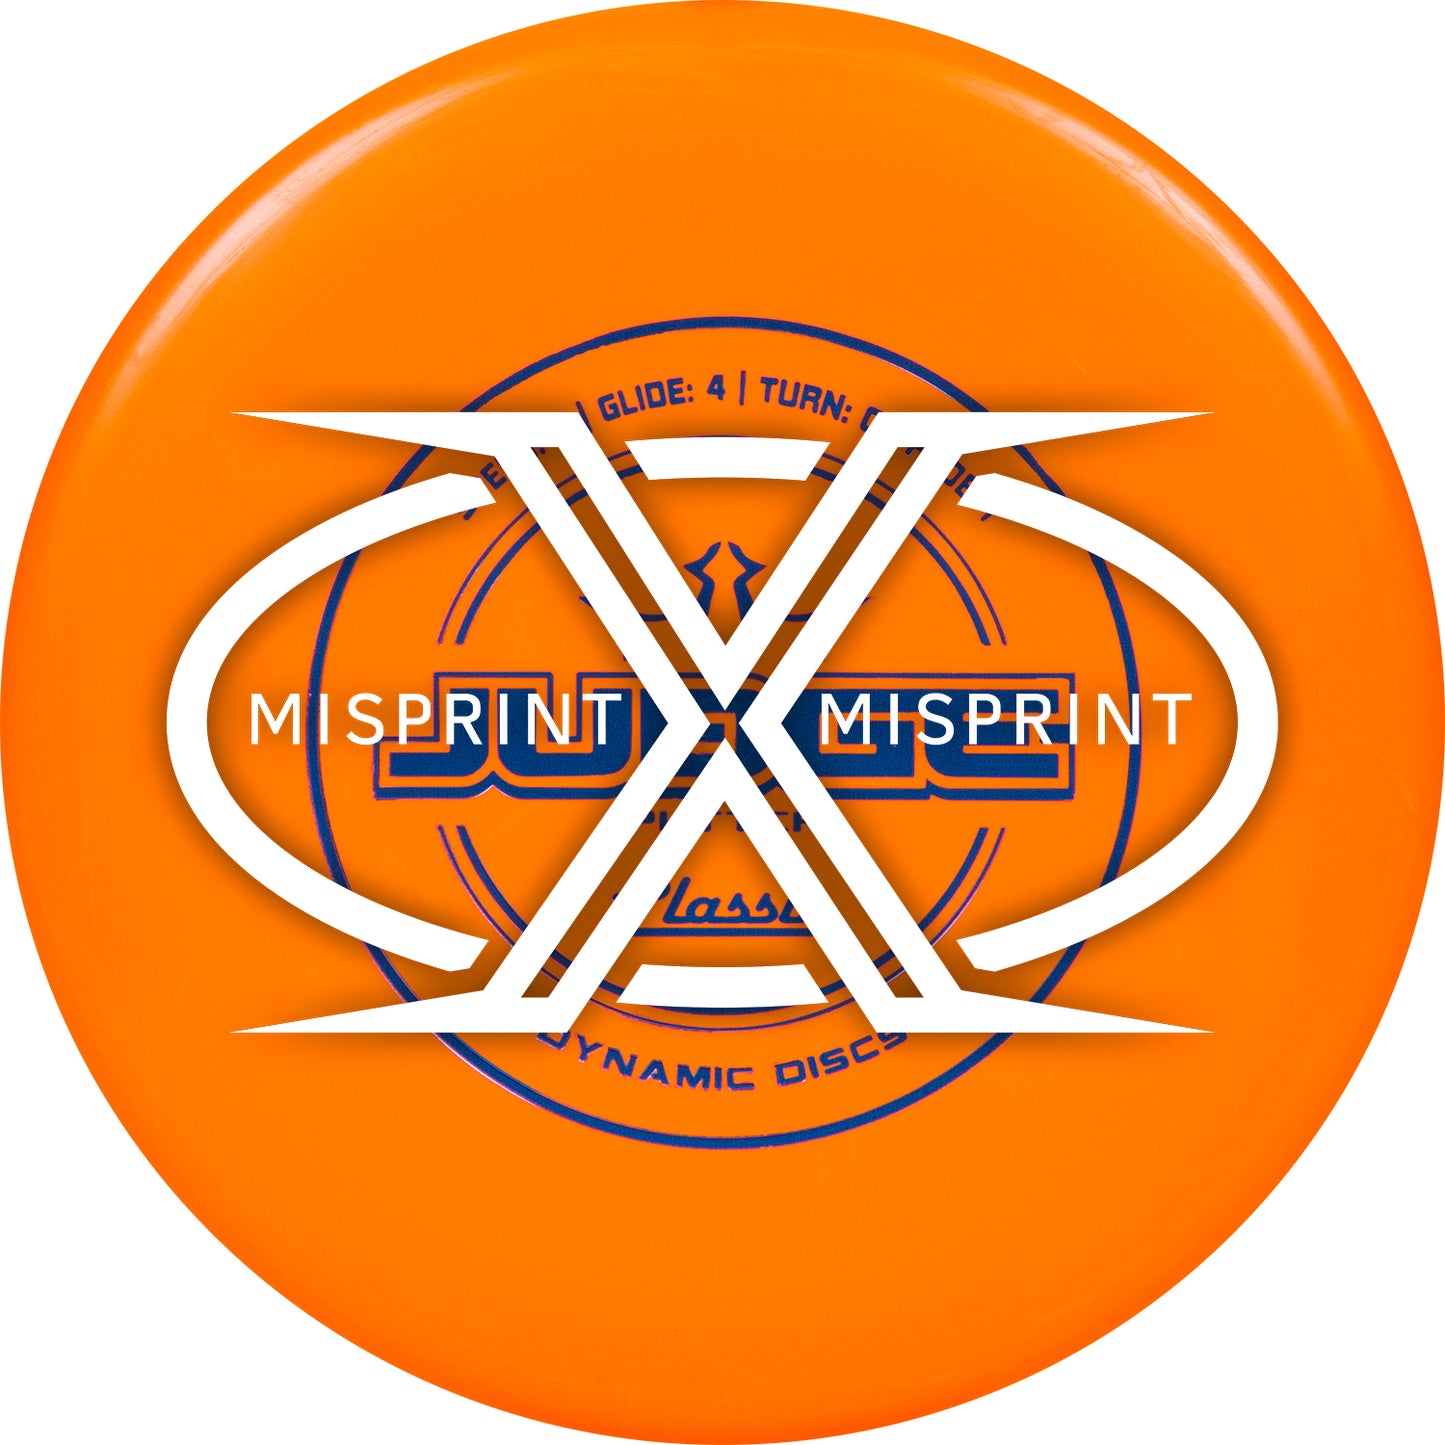 Misprint Dynamic Discs Classic Judge